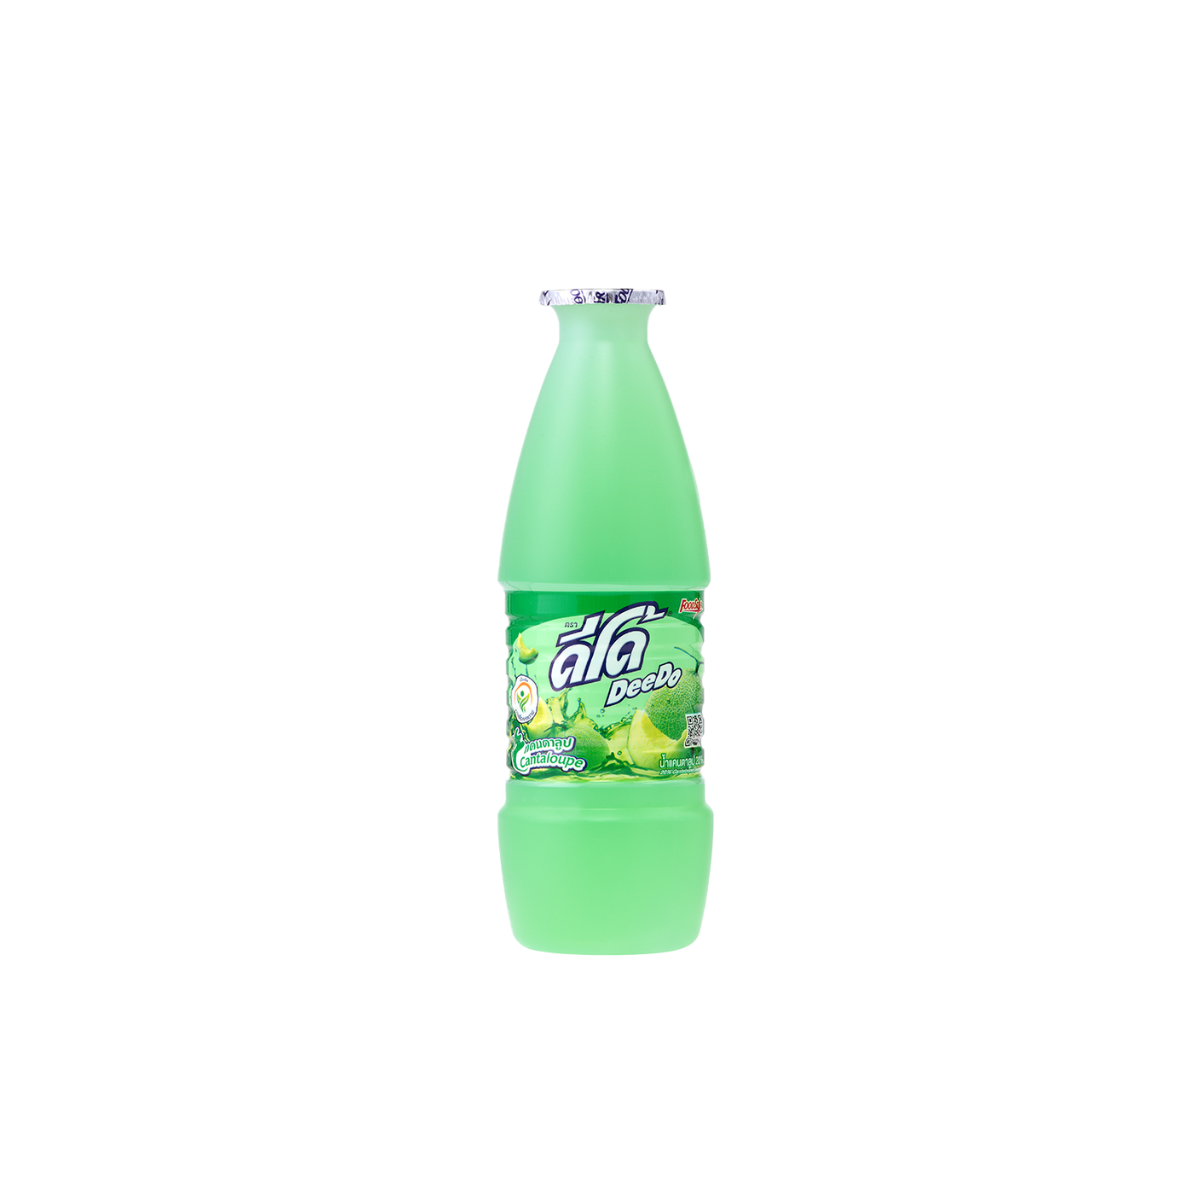 Deedo Cantaloupe Juice - 300 ml